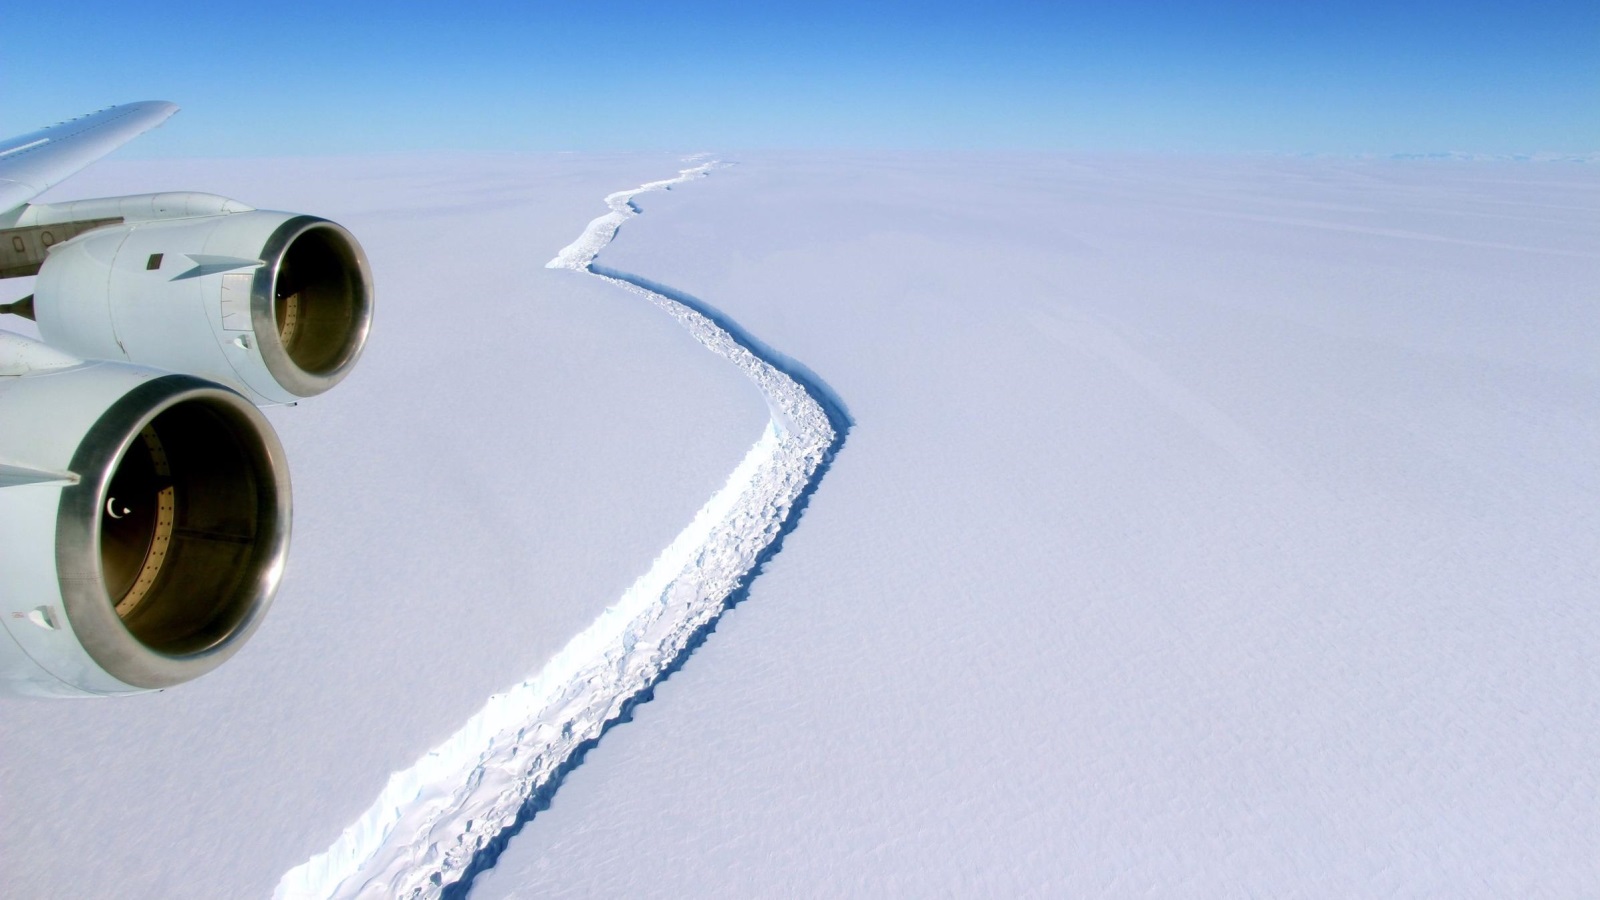 ‪صورة تظهر مدى ضخامة الصدع الذي يوشك أن يكتمل ليشكل في نهاية المطاف جبلا جليديا ضخما‬ (الأوروبية)